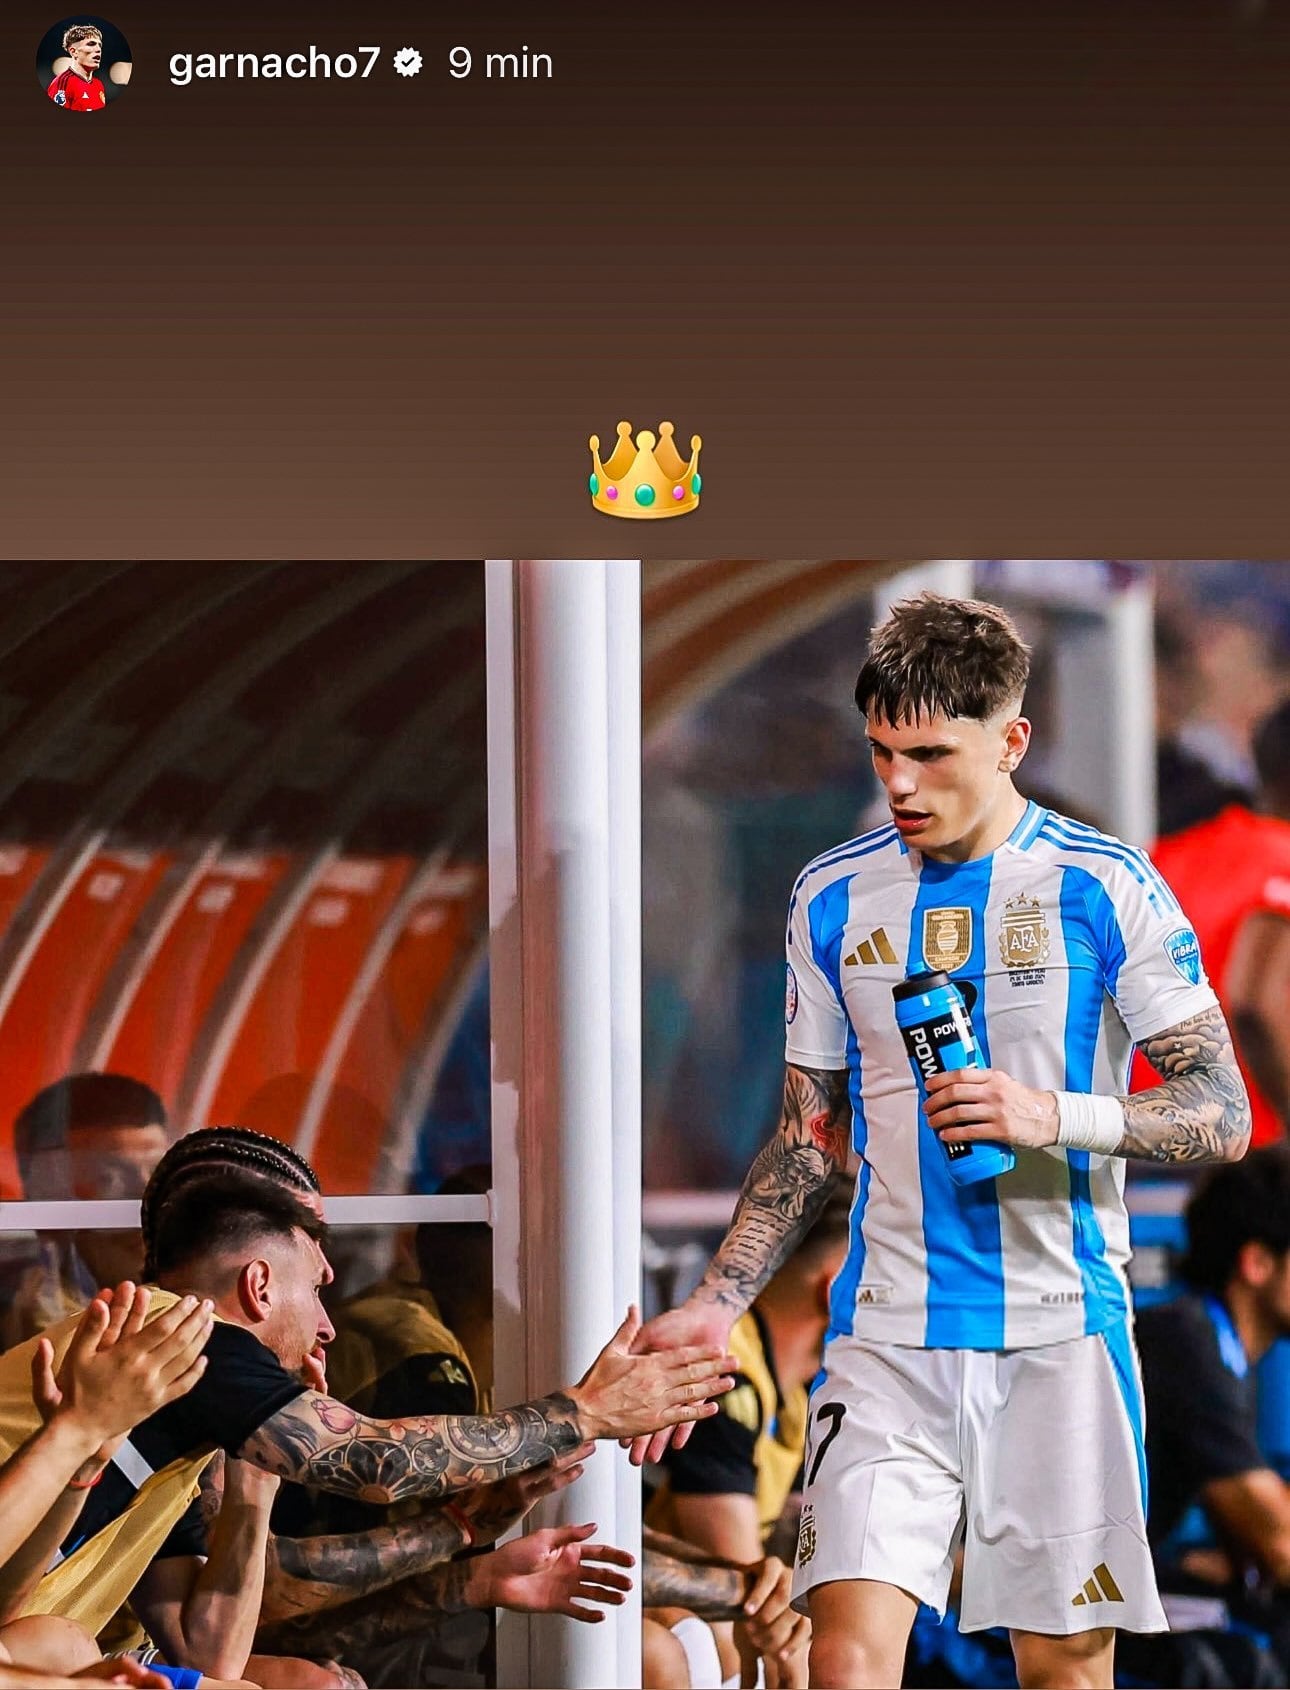 El posteo de Alejandro Garnacho sobre Messi